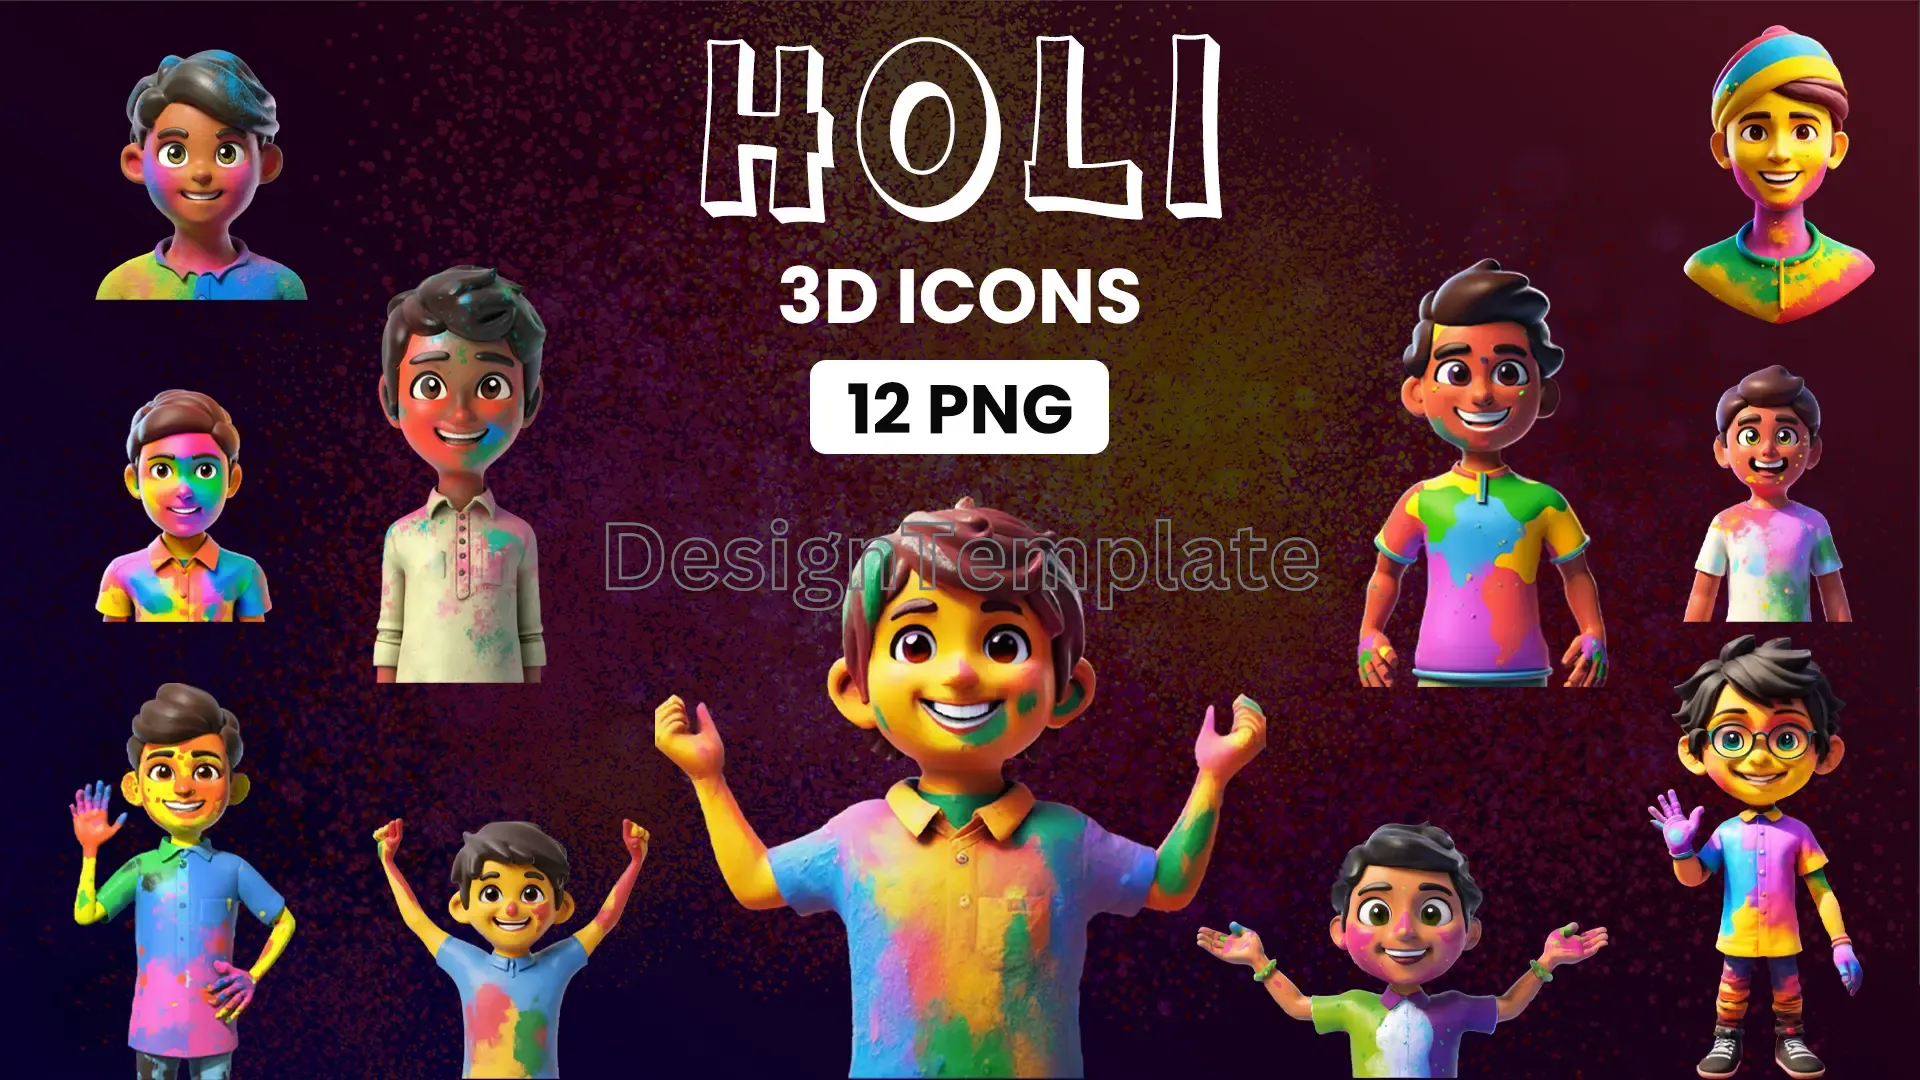 Holi Festival 3D Character Design Assets image